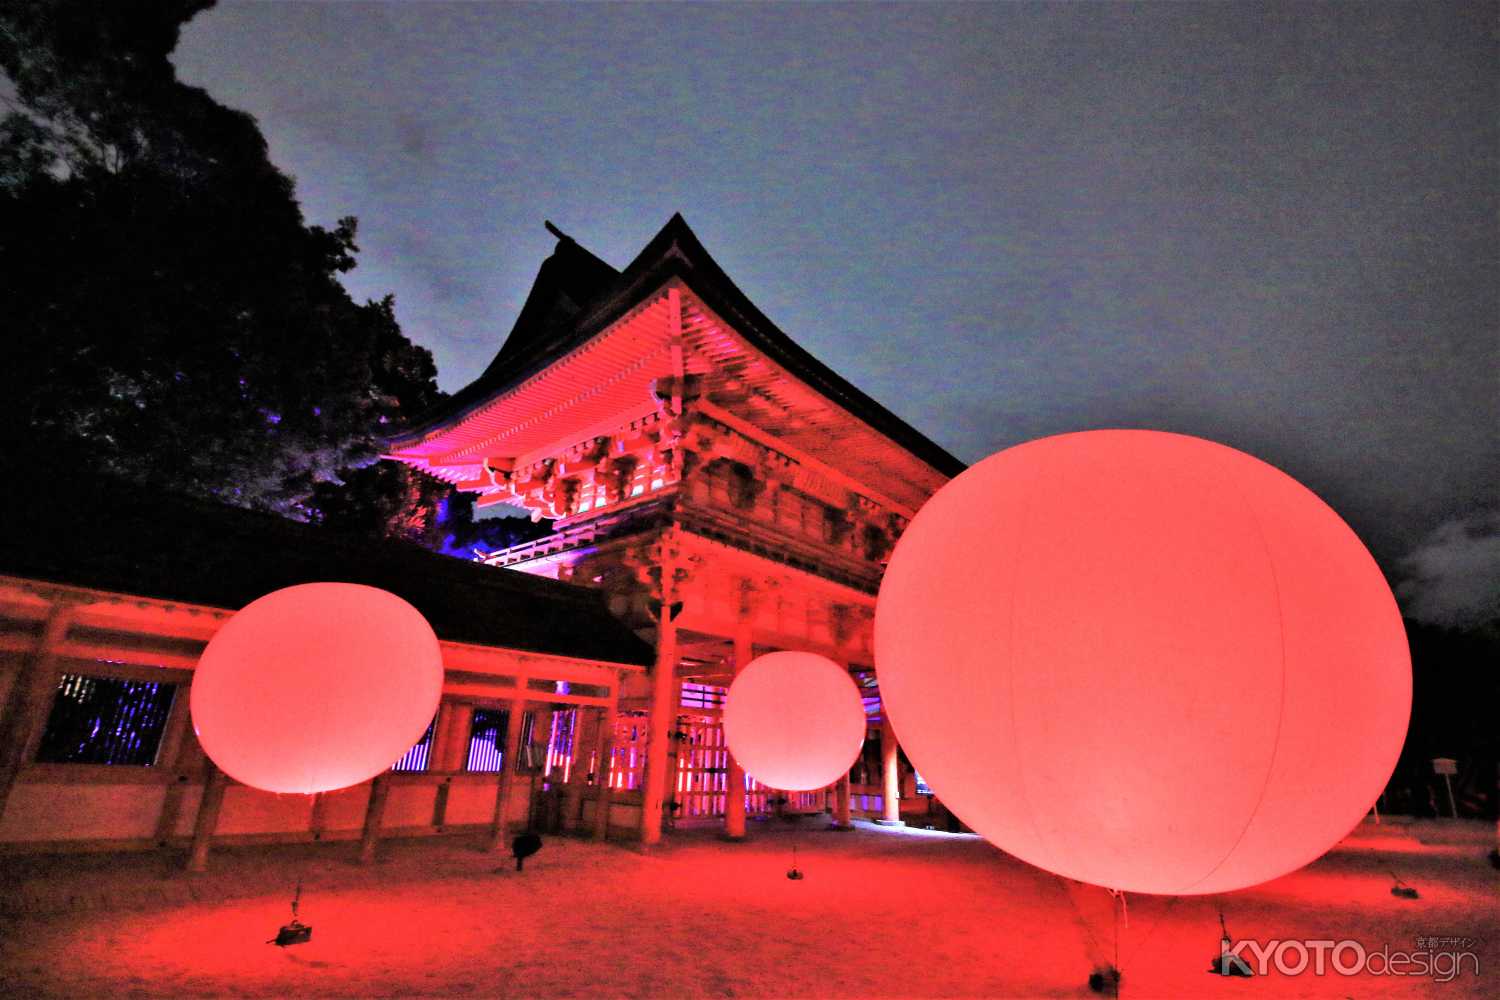 下鴨神社 糺の森の光の祭